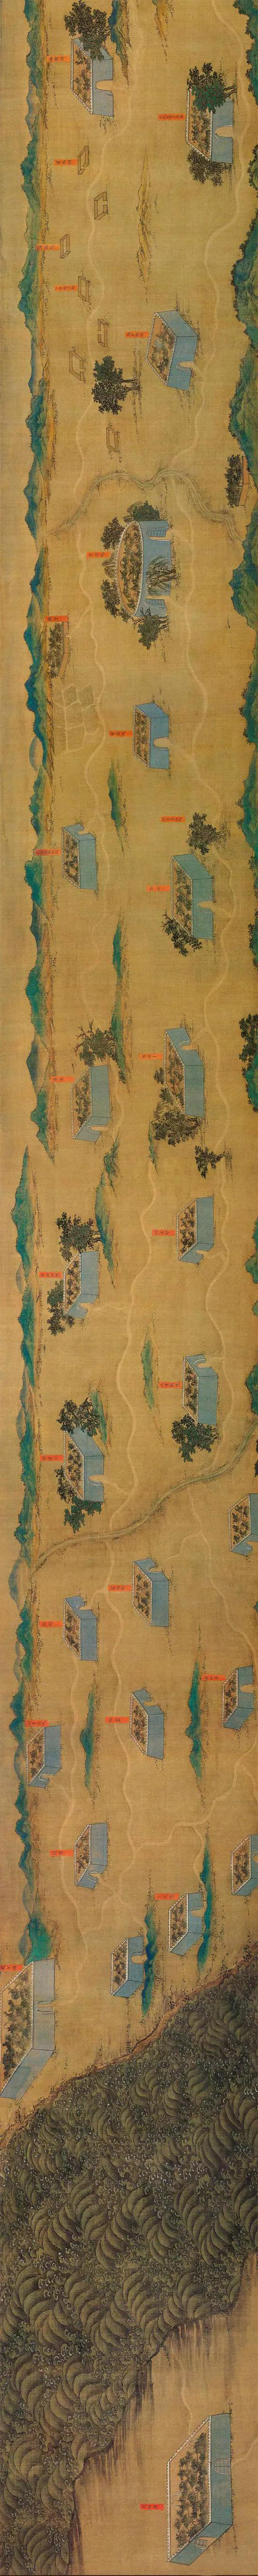 丝路山水地图 细节